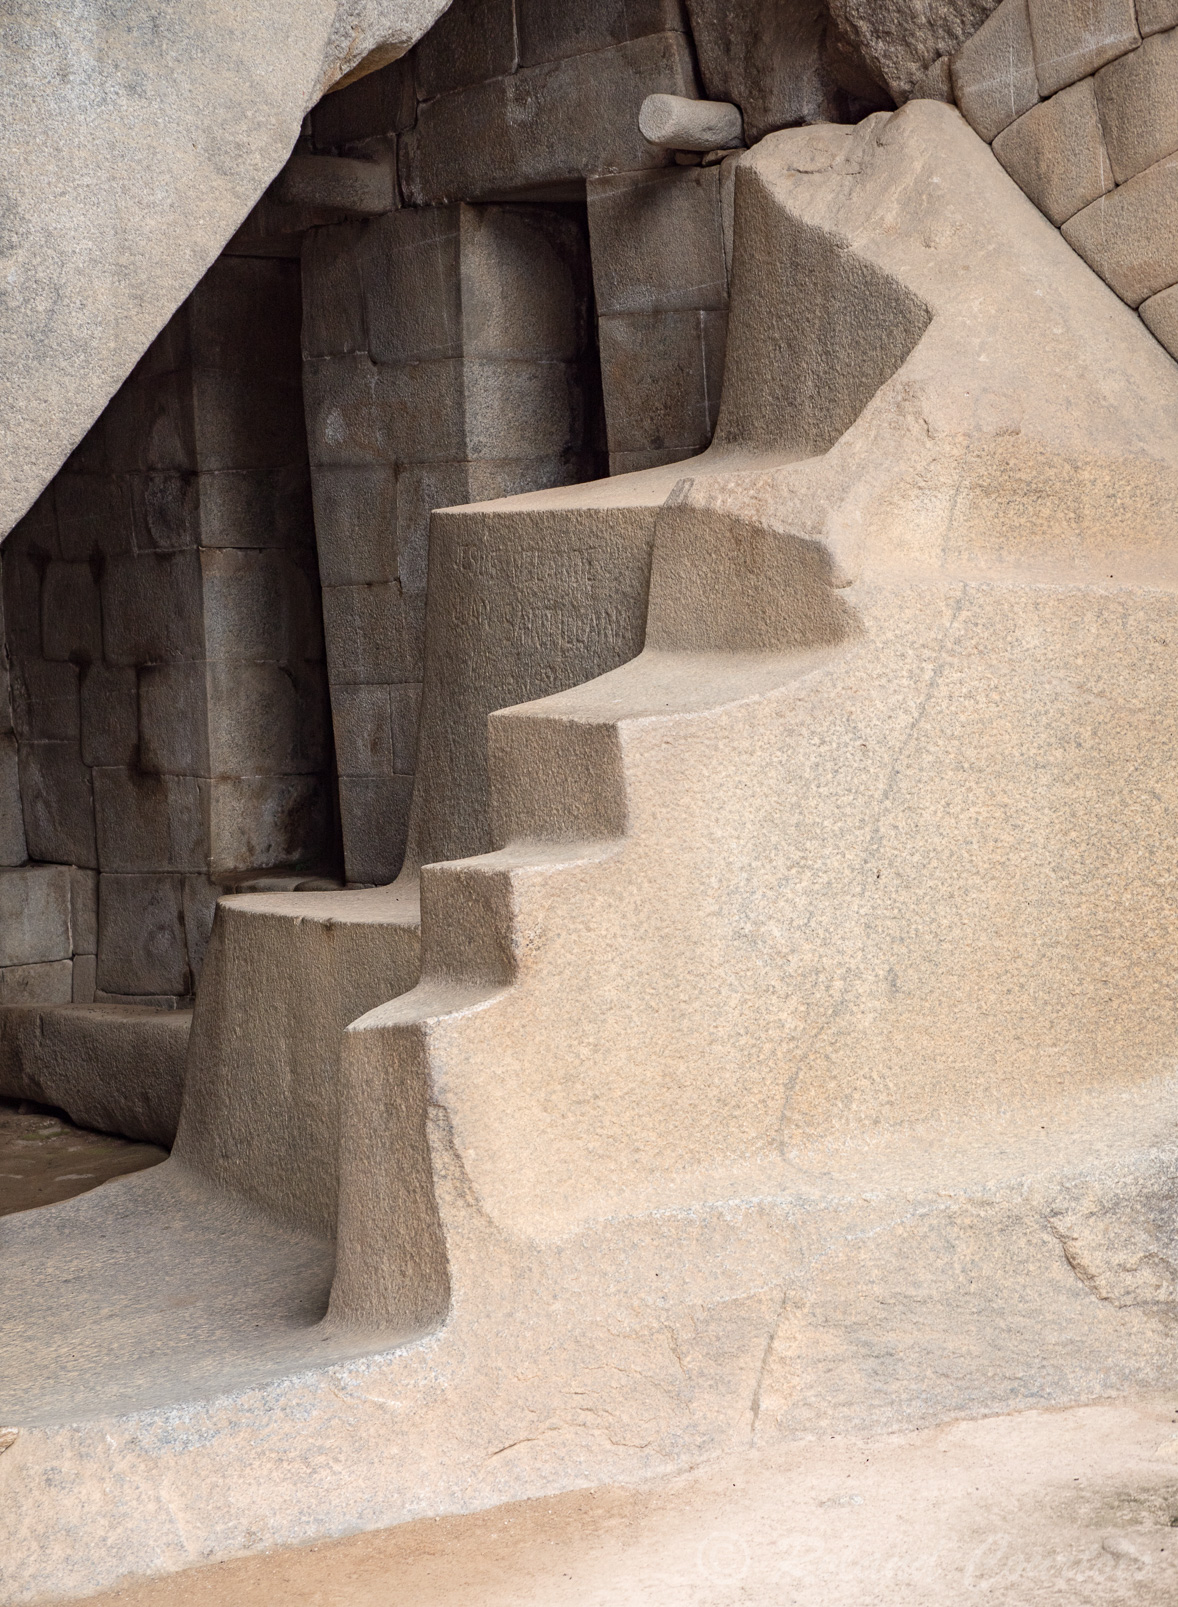 Machu Pichu, La Tombe Royale située sous le Temple du Soleil, il s'agissait probablement d'un temple dédié à la Mère Terre ou Pache Mama.  La qualité des finitions architecturales respire l'harmonie et une parfaite complémentarité entre la nature et le travail de l'homme.